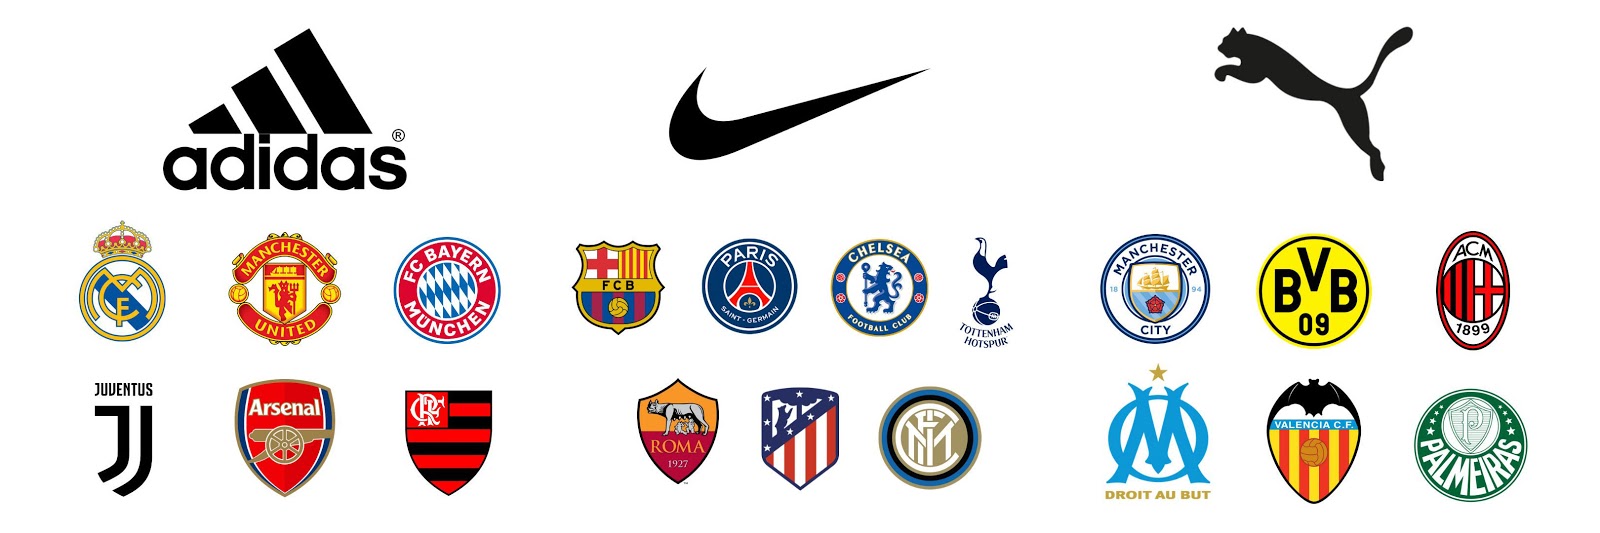 运动品牌赞助俱乐部和球星也是门生意，梅西的那份合约价值可能与此接近